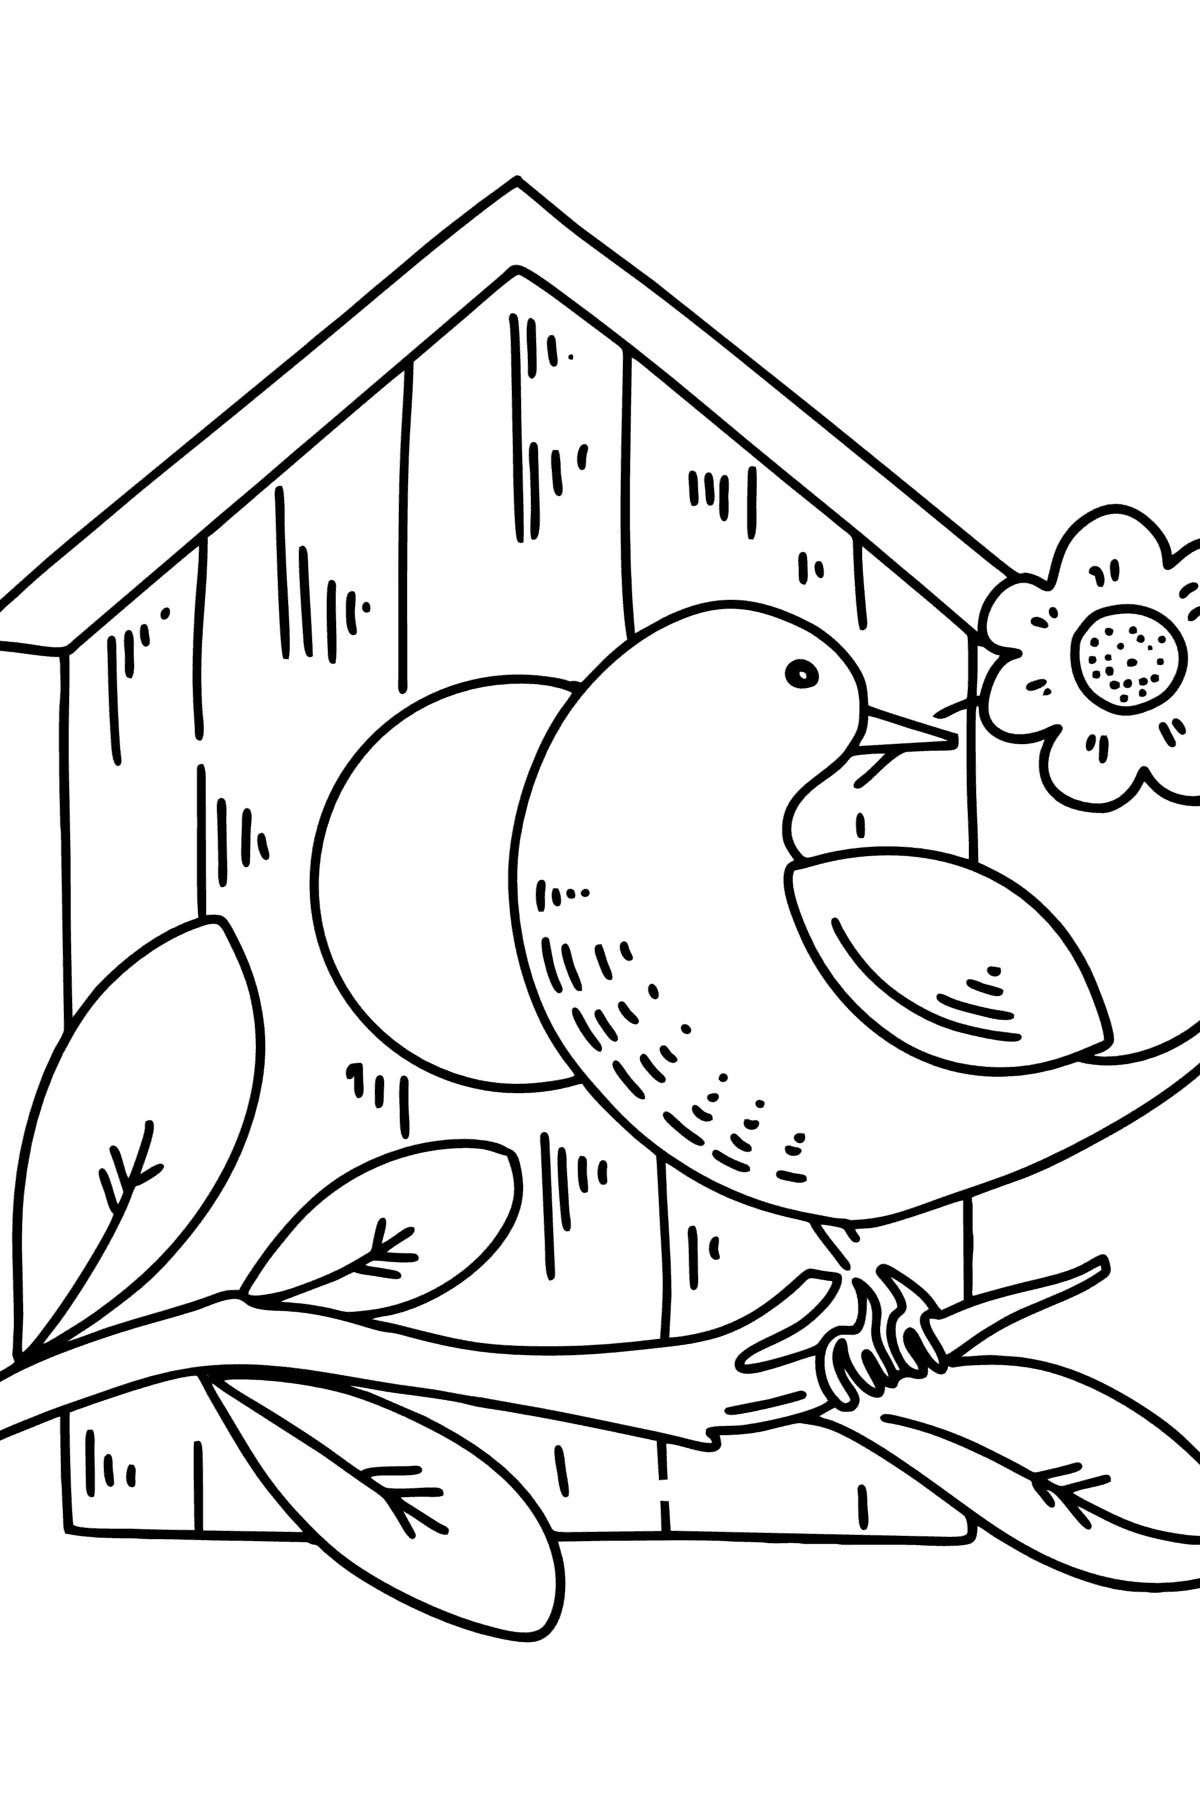 Kleurplaat spreeuwen in het vogelhuisje - kleurplaten voor kinderen